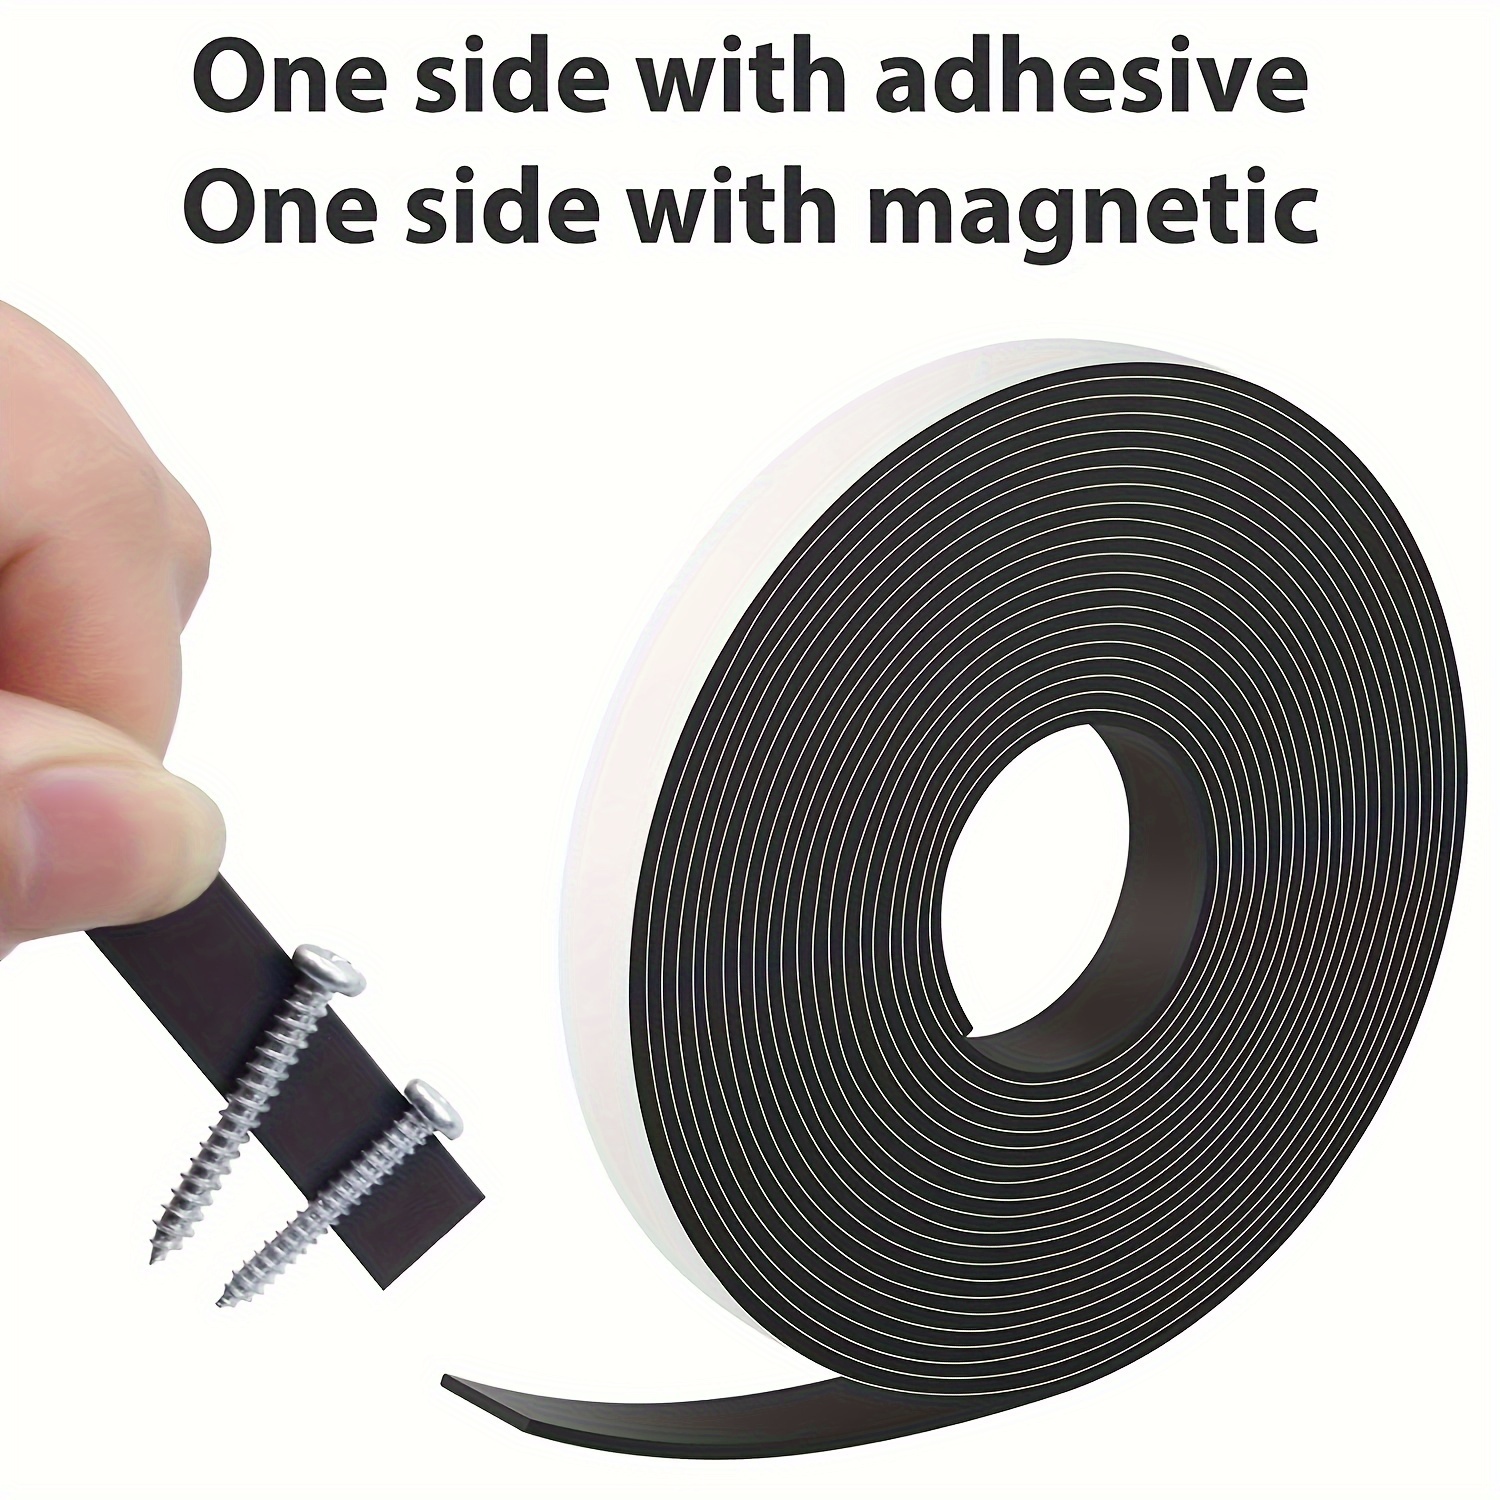 Cinta magnética, rollo de cinta magnética de 15 pies (1/2 pulgadas de ancho  x 15 pies de largo), con respaldo adhesivo fuerte 3M. Perfecto para